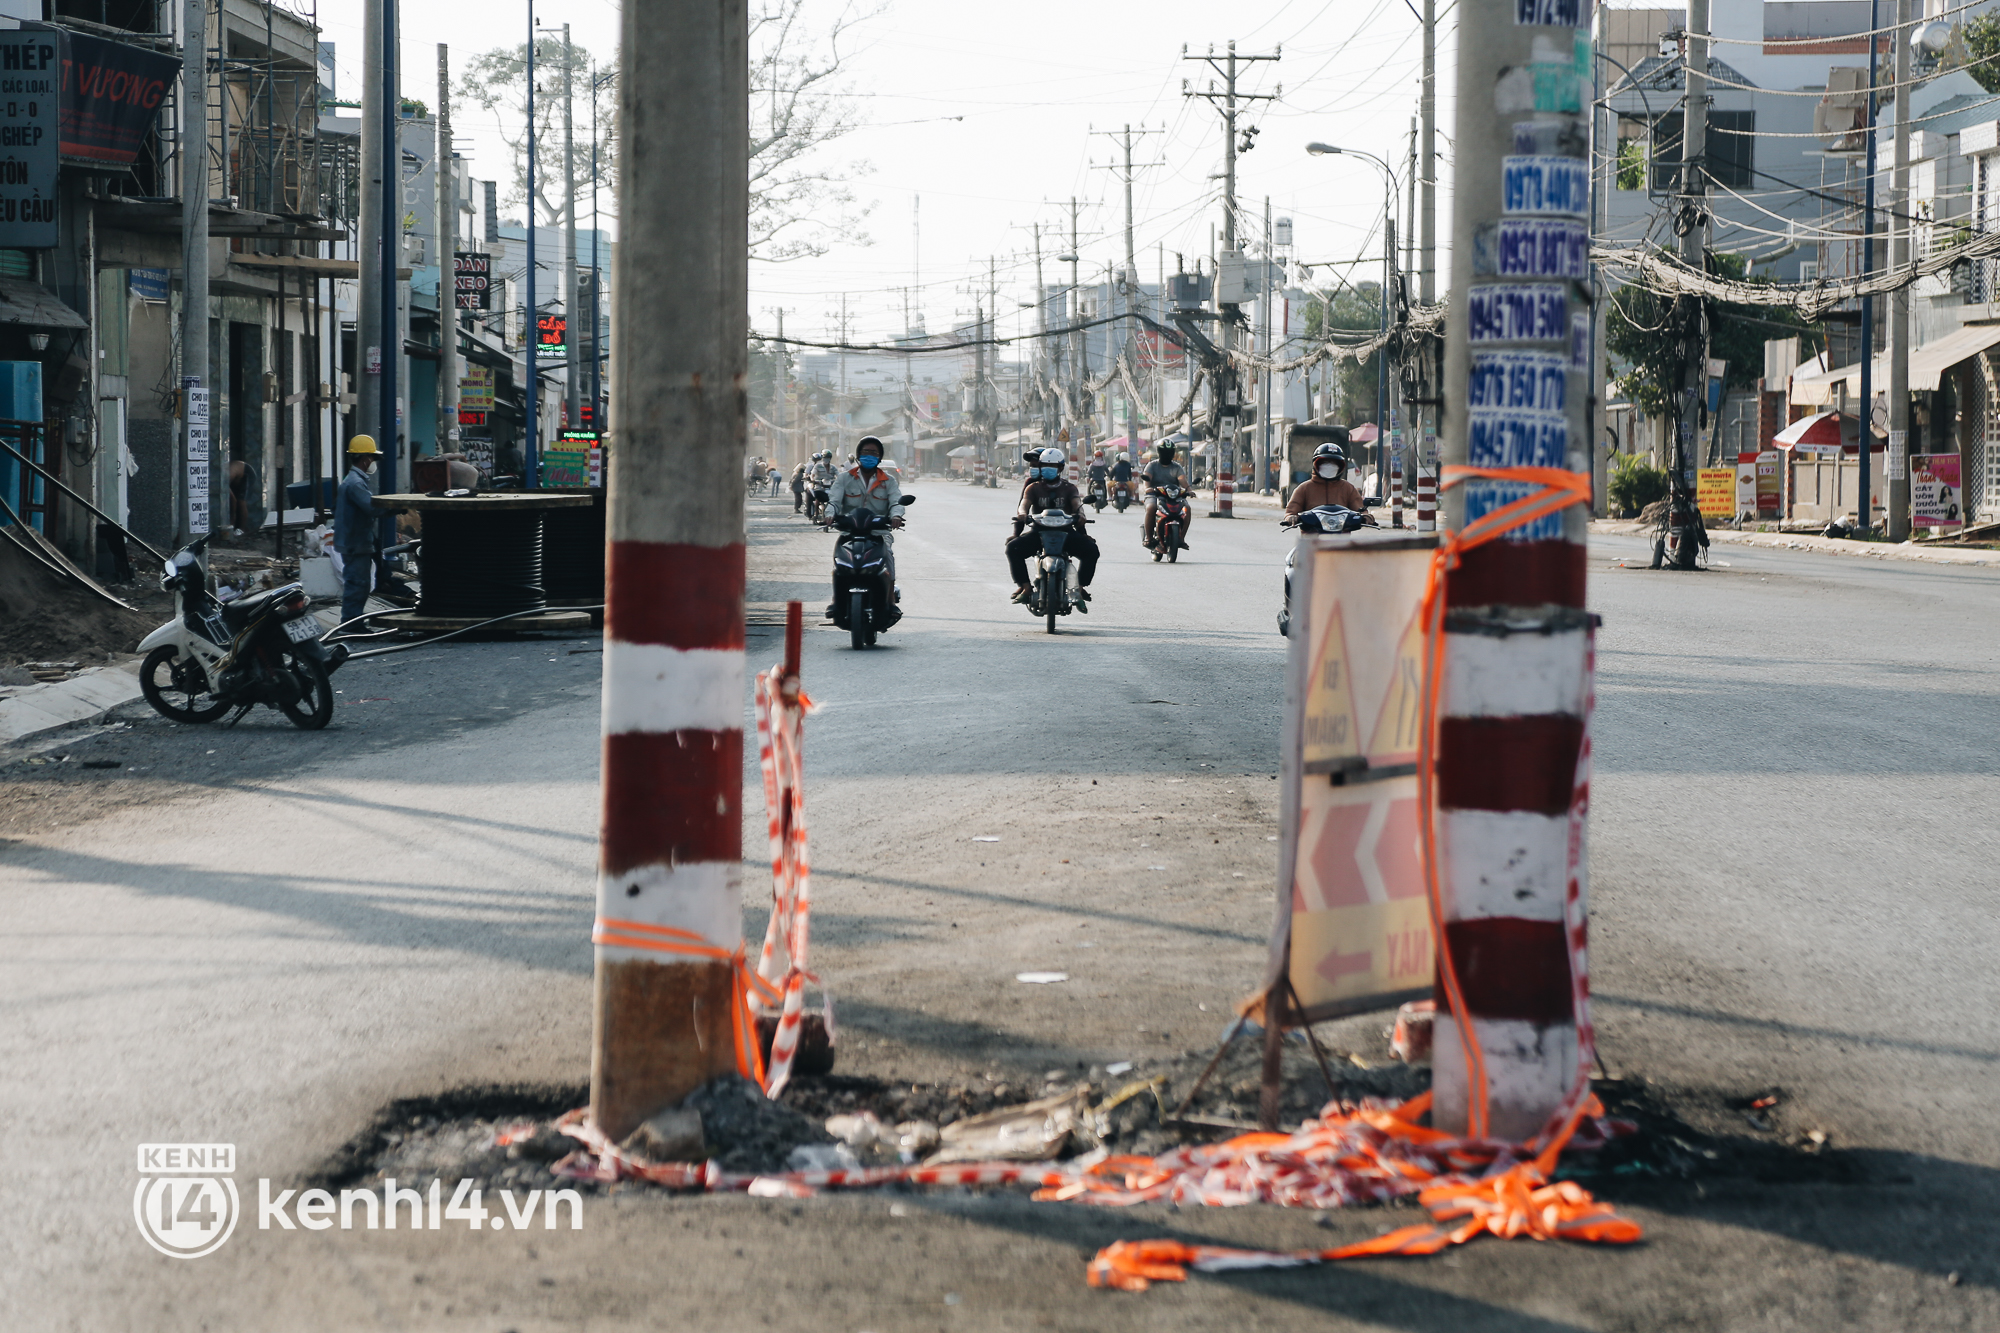 Hàng trăm cột điện bị bỏ quên giữa đường ở Sài Gòn, người dân nín thở luồn lách - Ảnh 9.